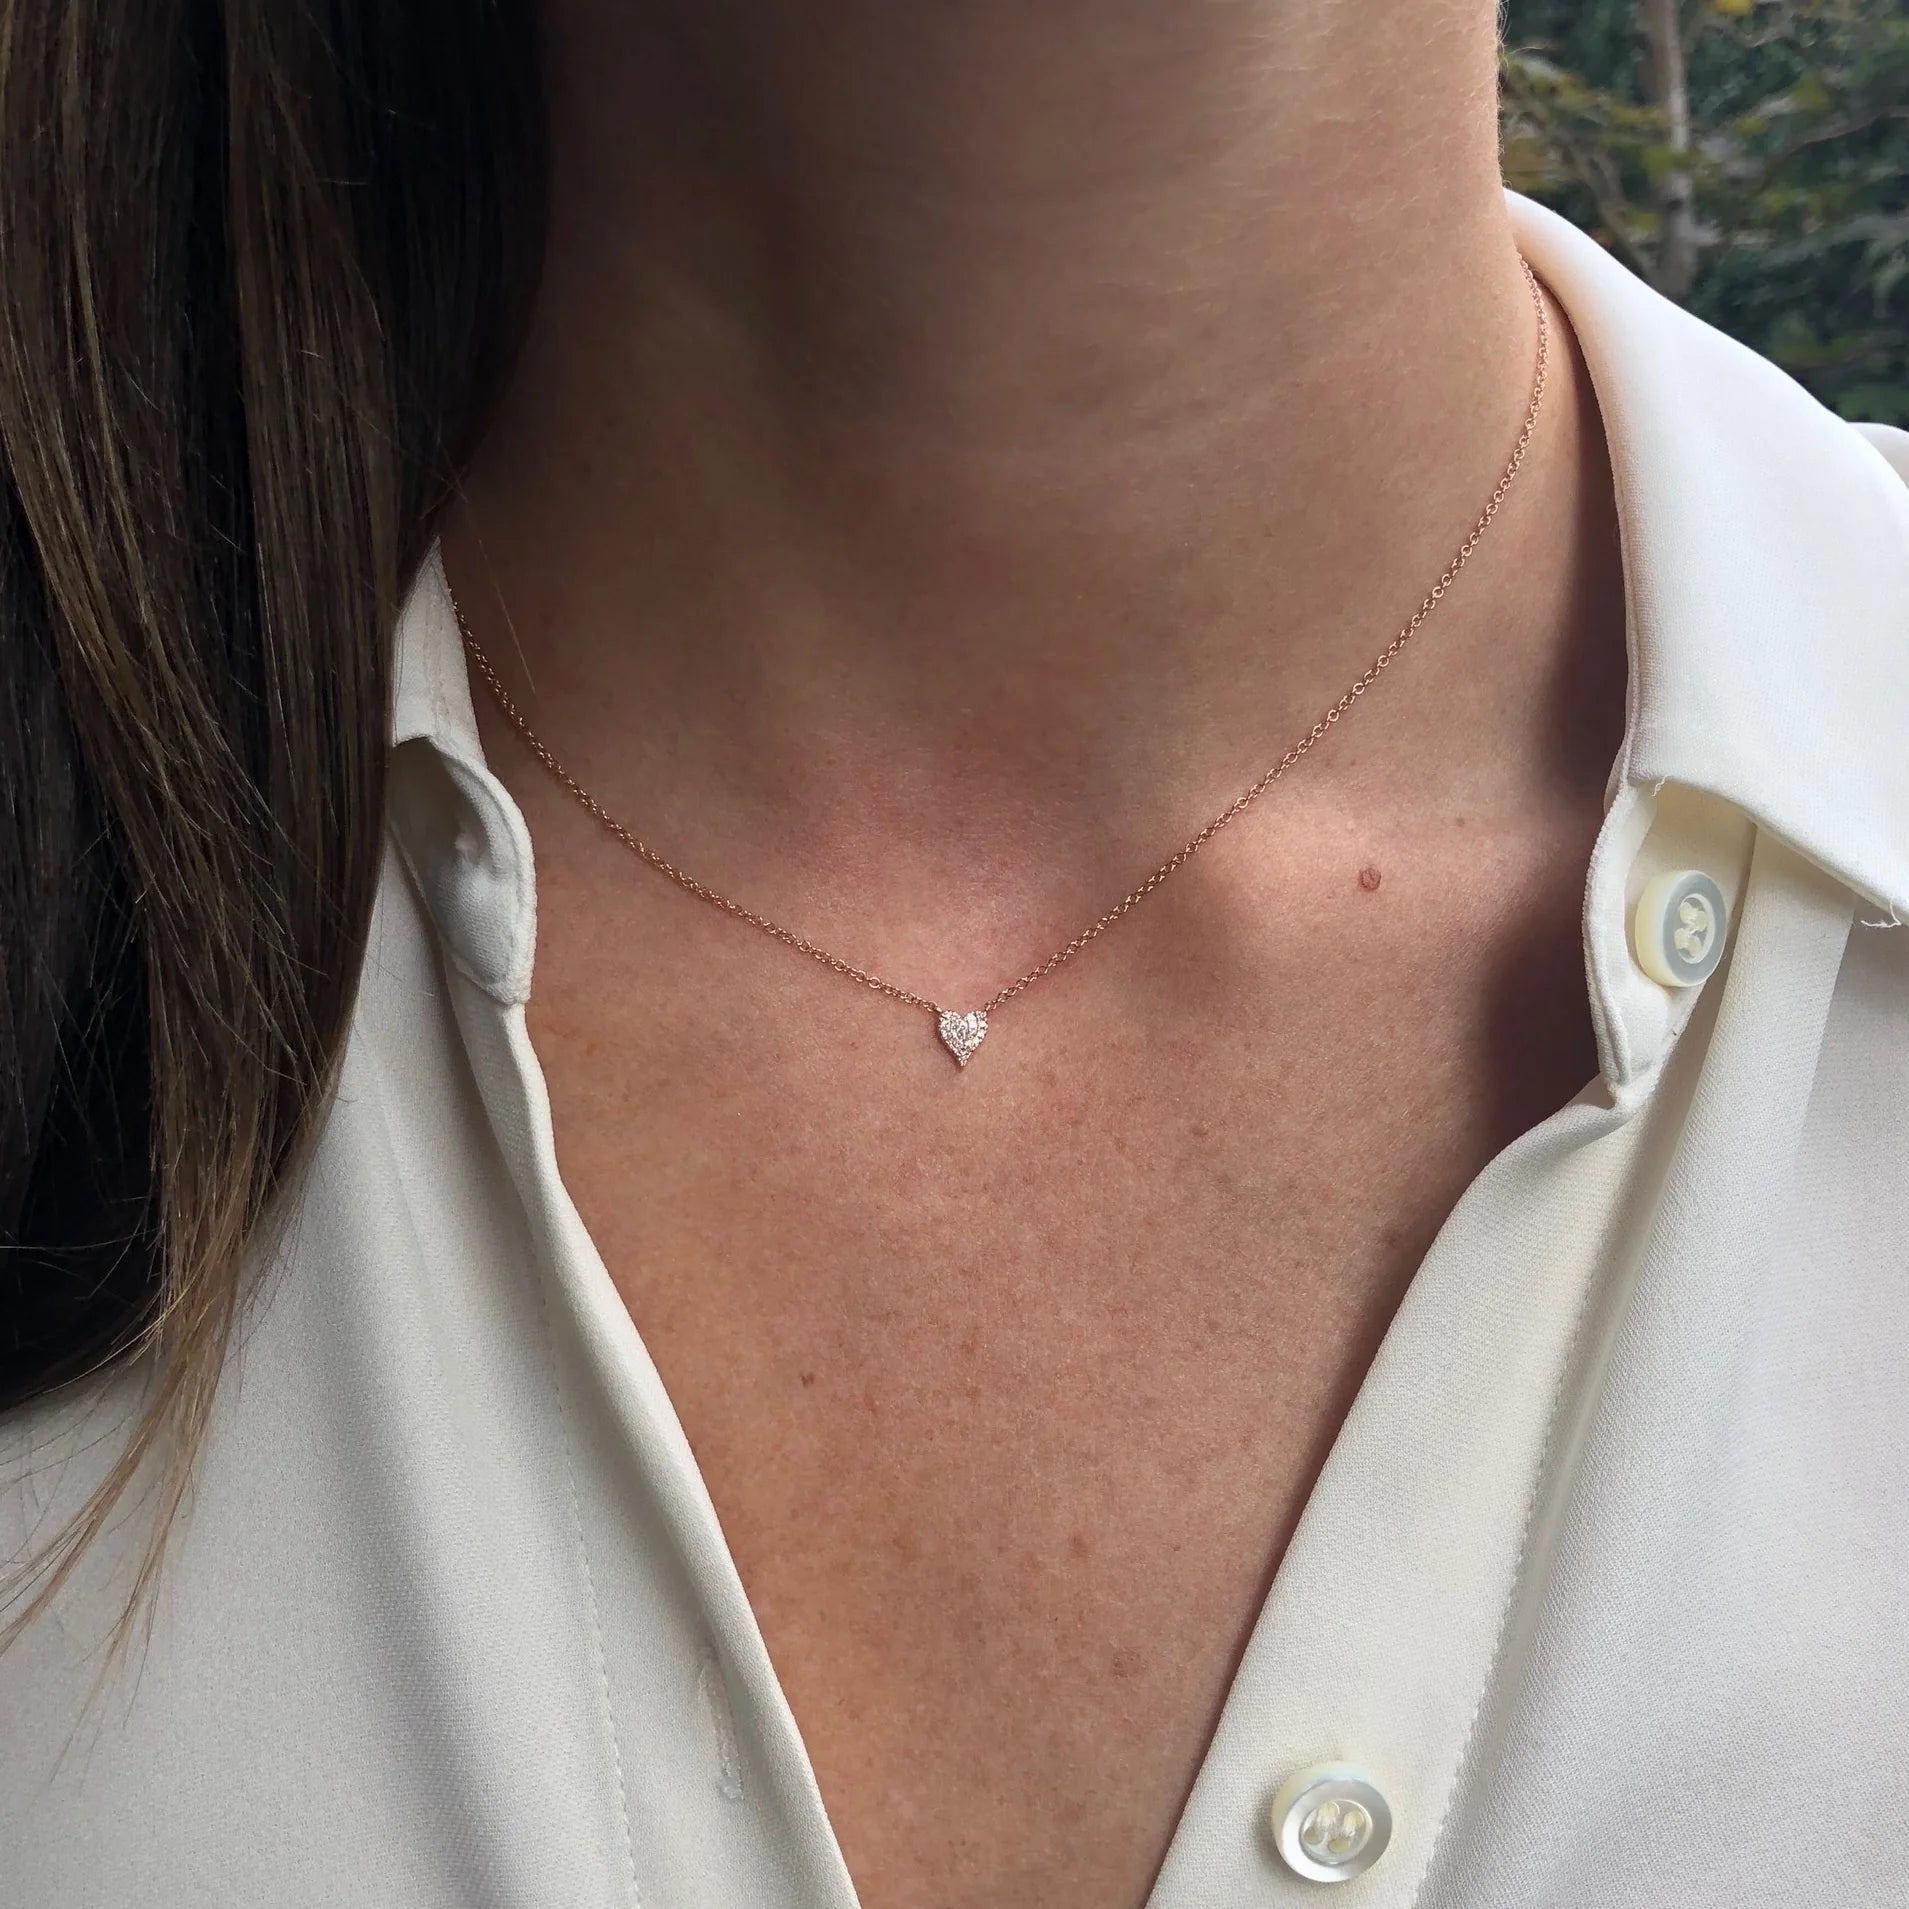 Buy the Gold Mini Heart Necklace from British Jewellery Designer Daniella  Draper – Daniella Draper UK